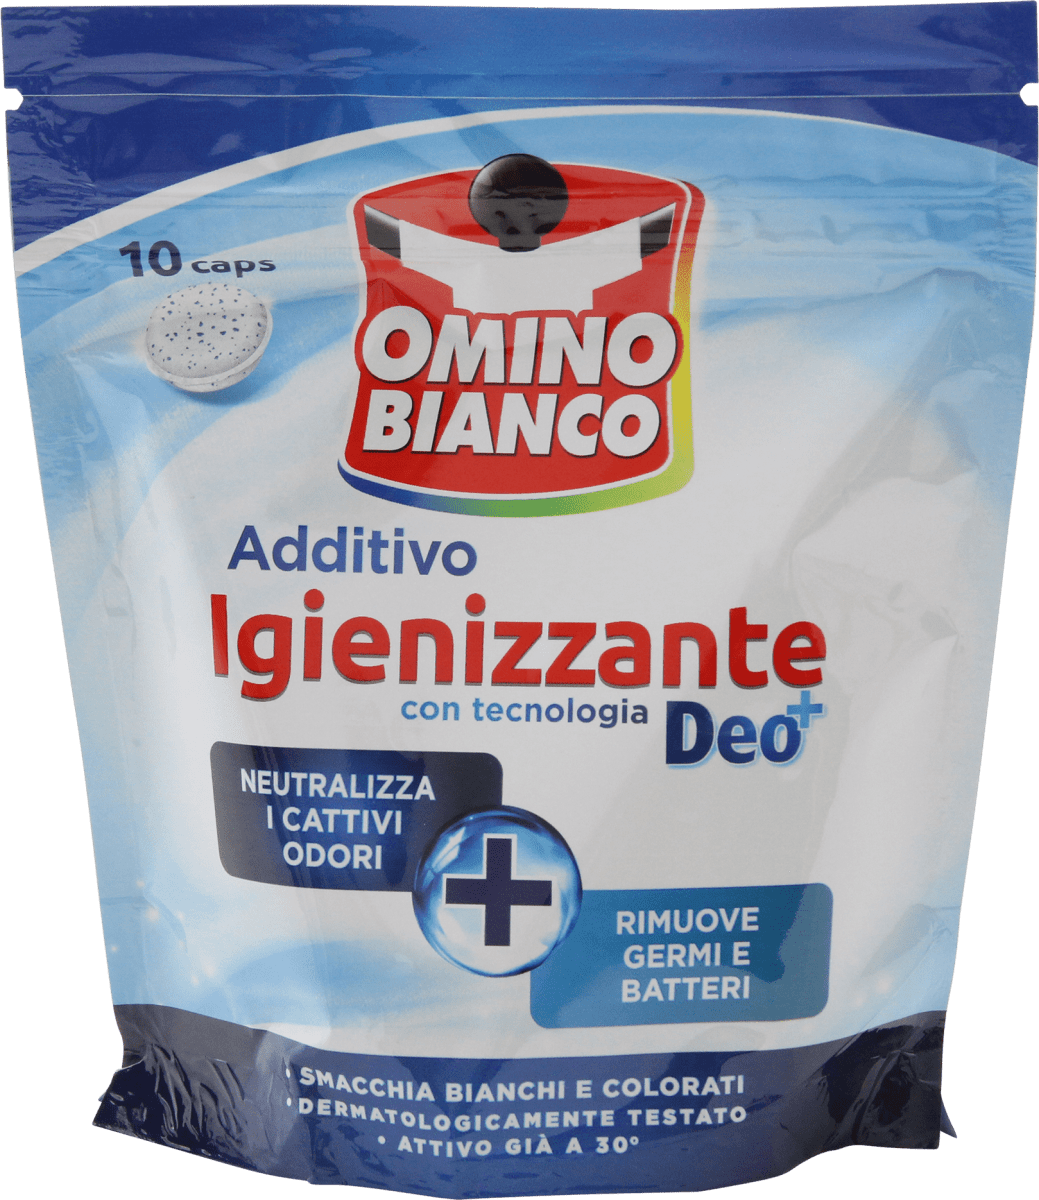 Omino Bianco Additivo igienizzante per bucato in caps, 10 pz